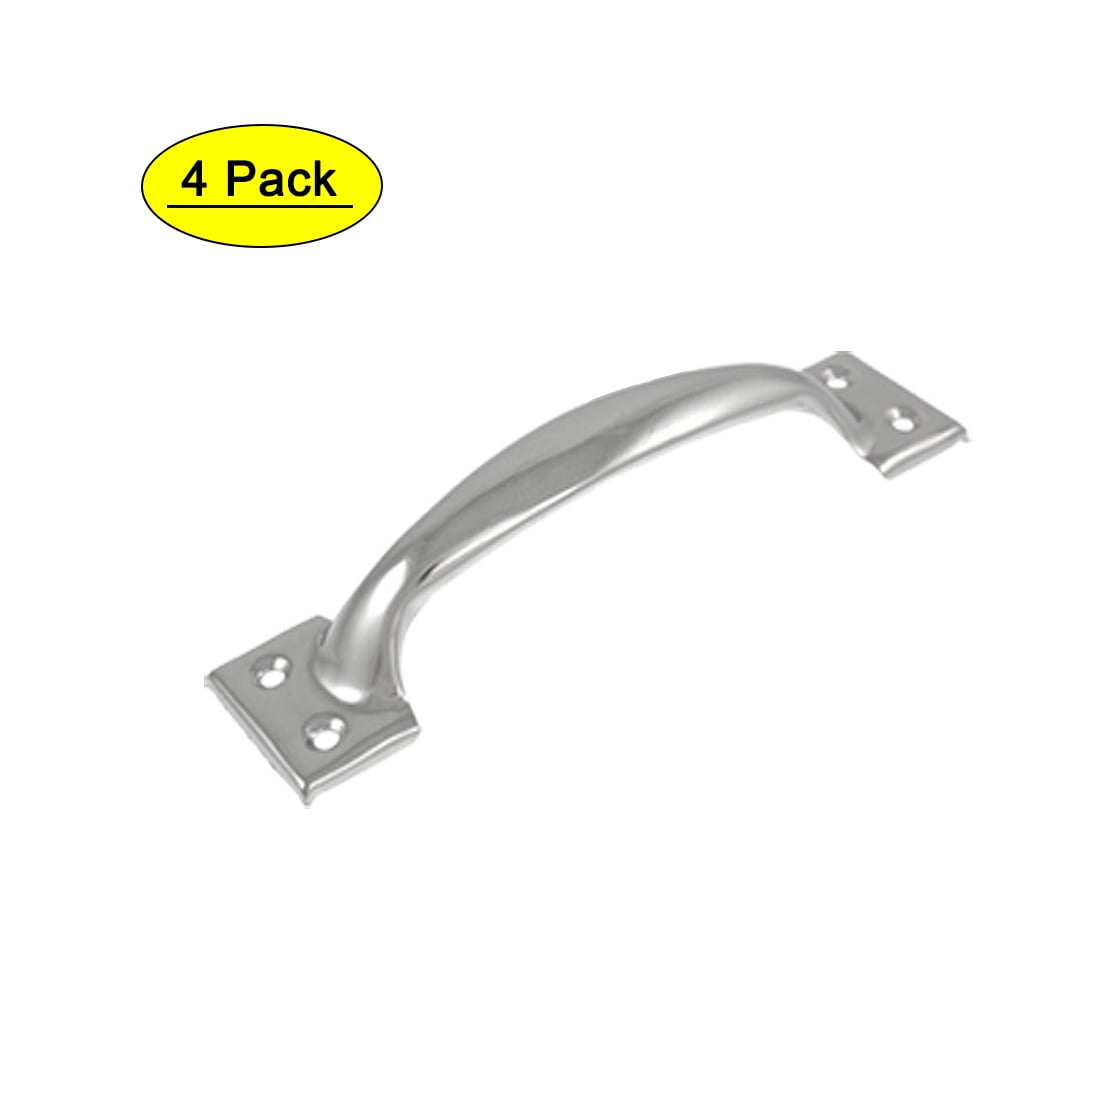 2 Pk Stainless Steel 6 1/2" Utility Door Drawer Grip Handle Pull 